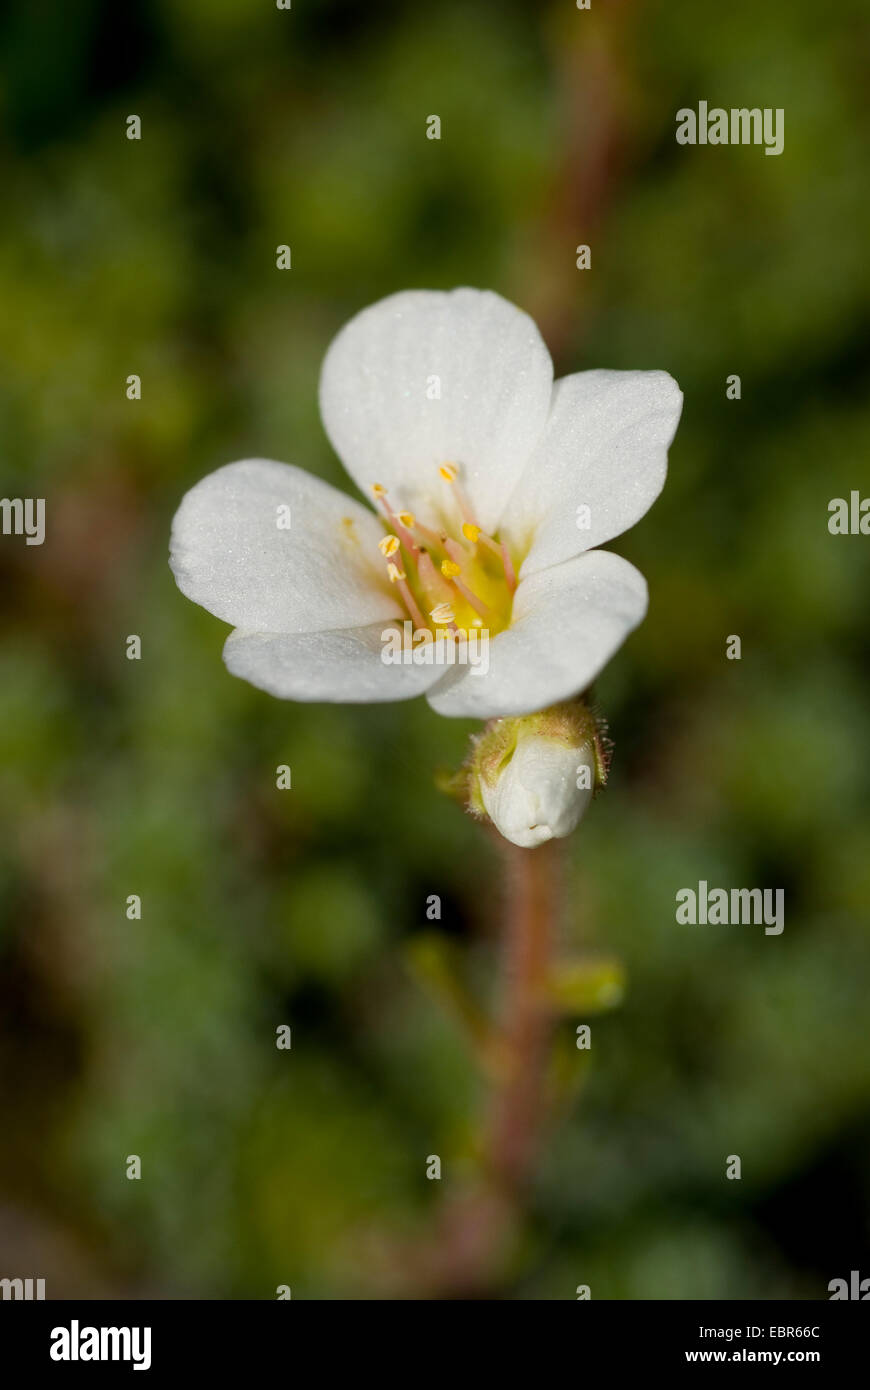 Saxifrage (Saxifraga marginata), flowers Stock Photo